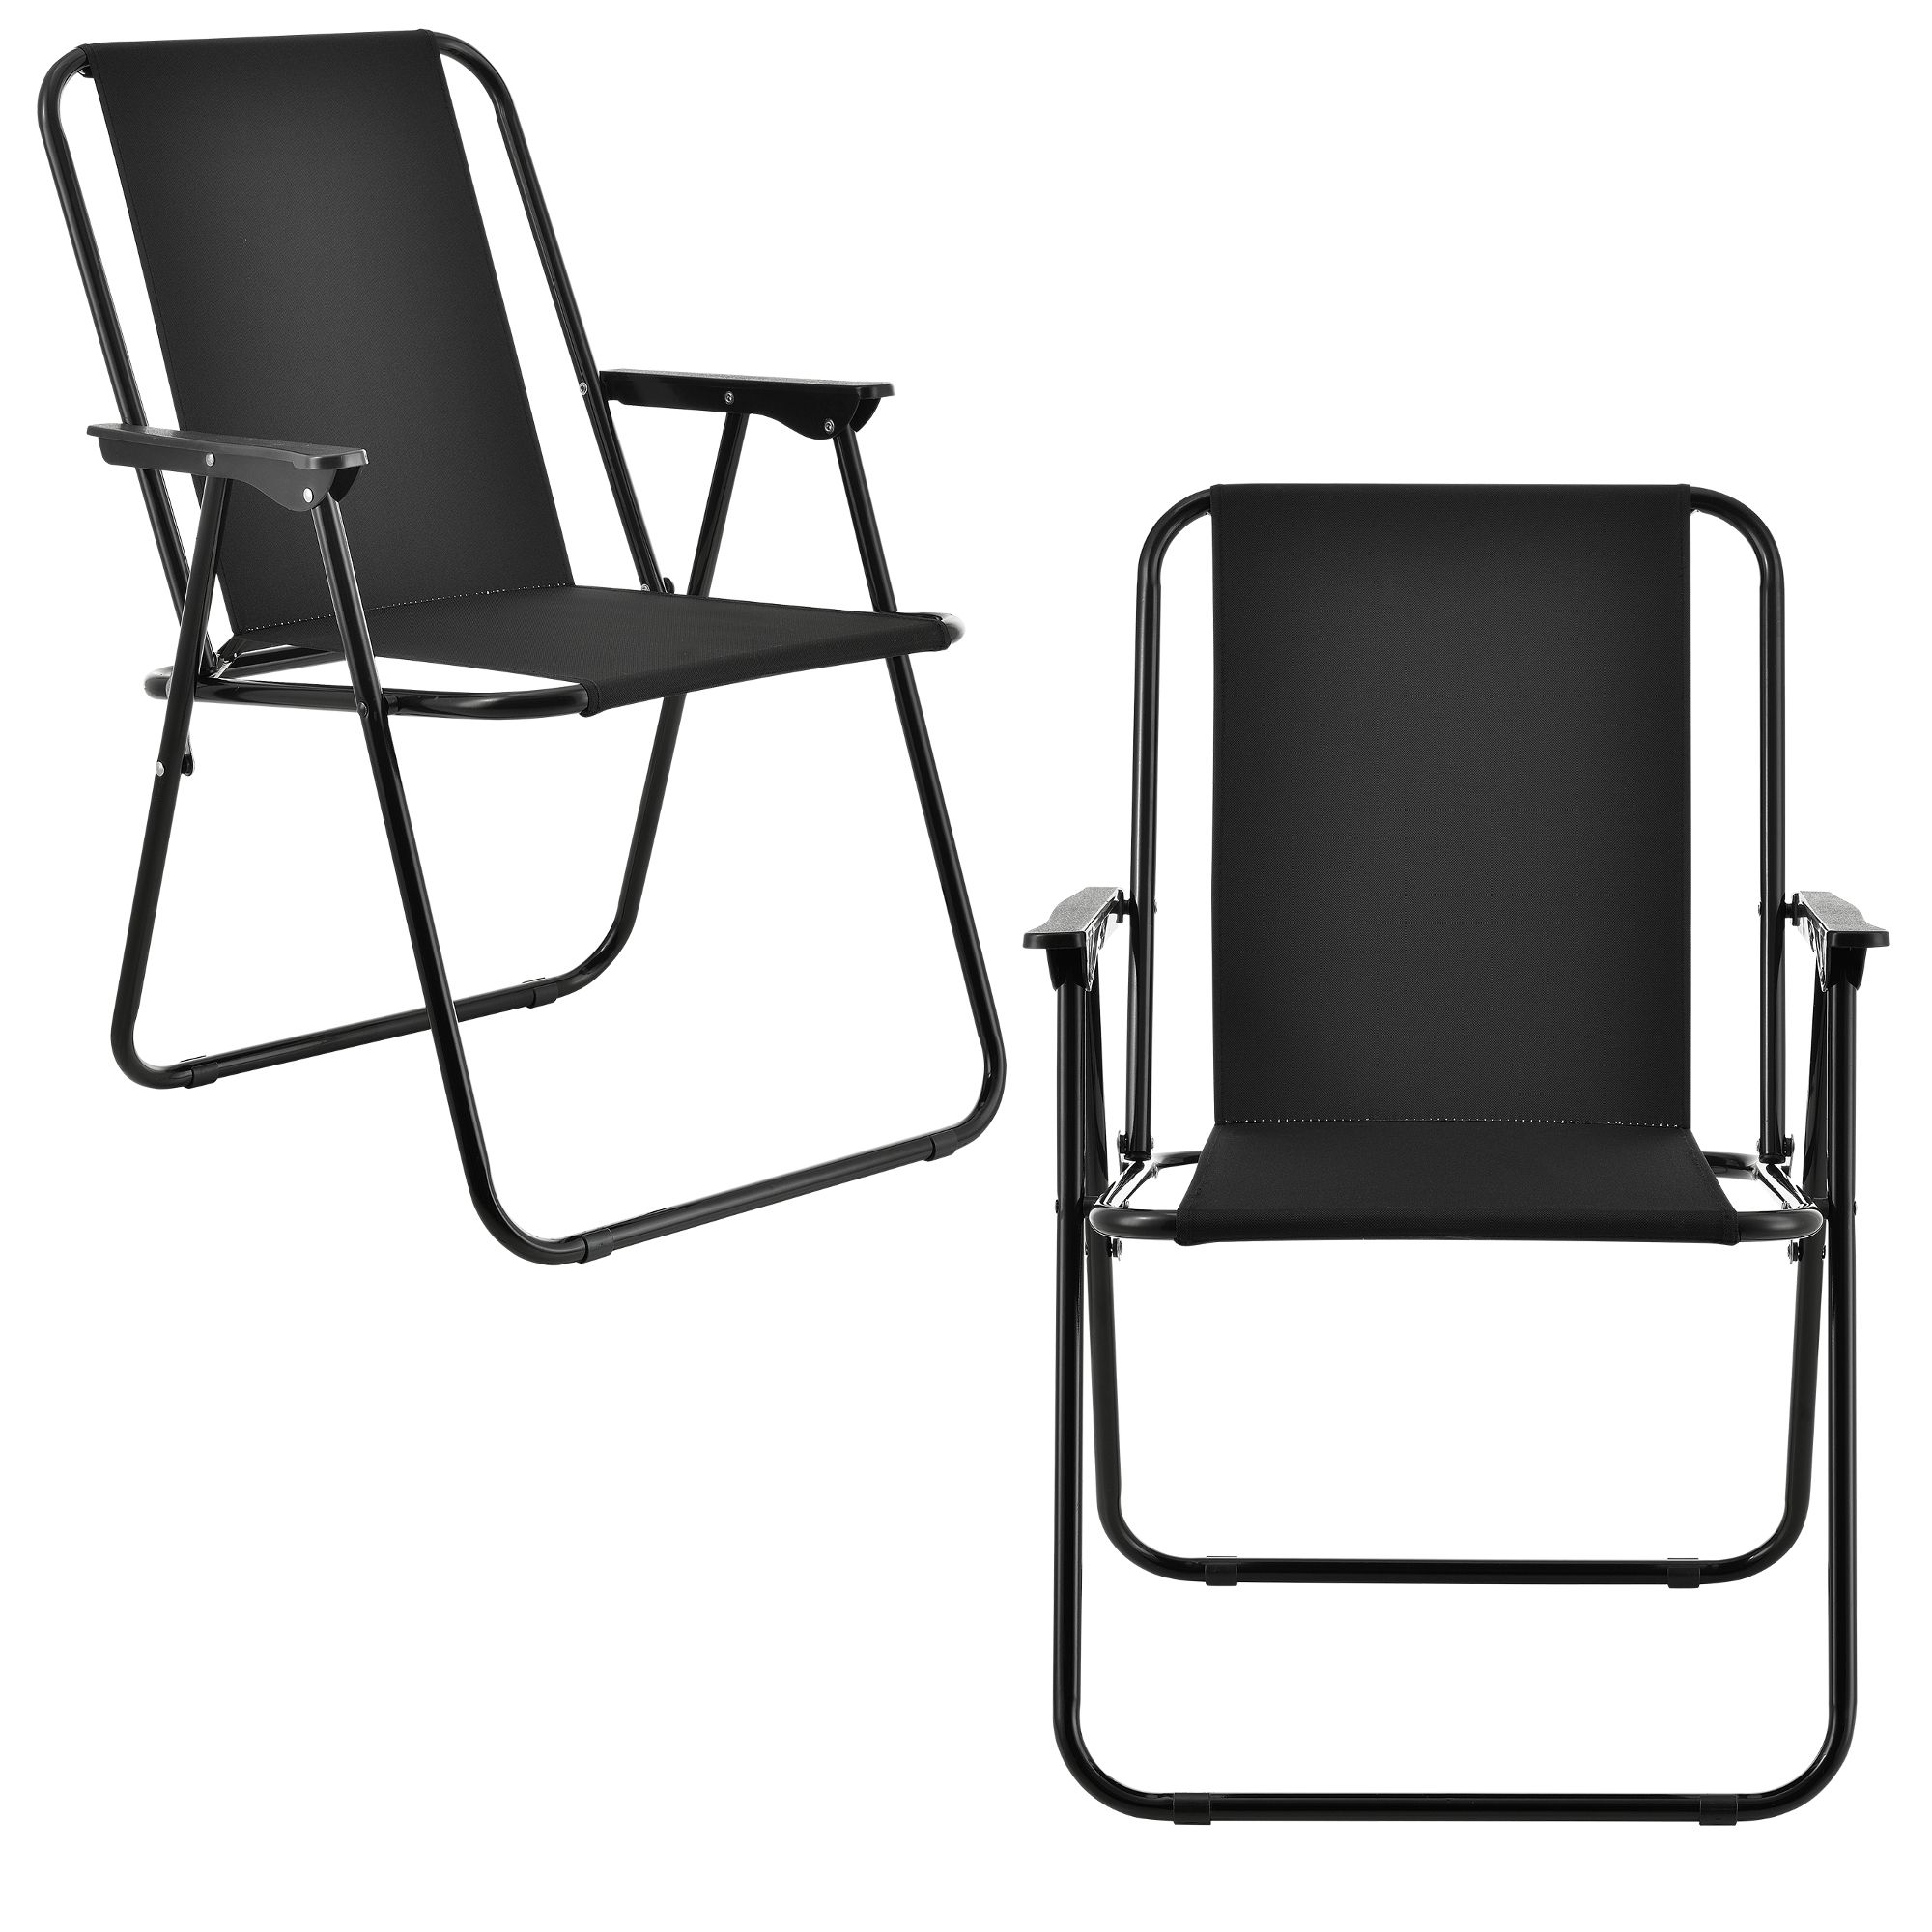 [casa.pro]® Camping židle - dvojité rybářské křeslo set,74 x 54 cm 31 x 37,5 cm,černá - H.T. Trade Service GmbH & Co. KG